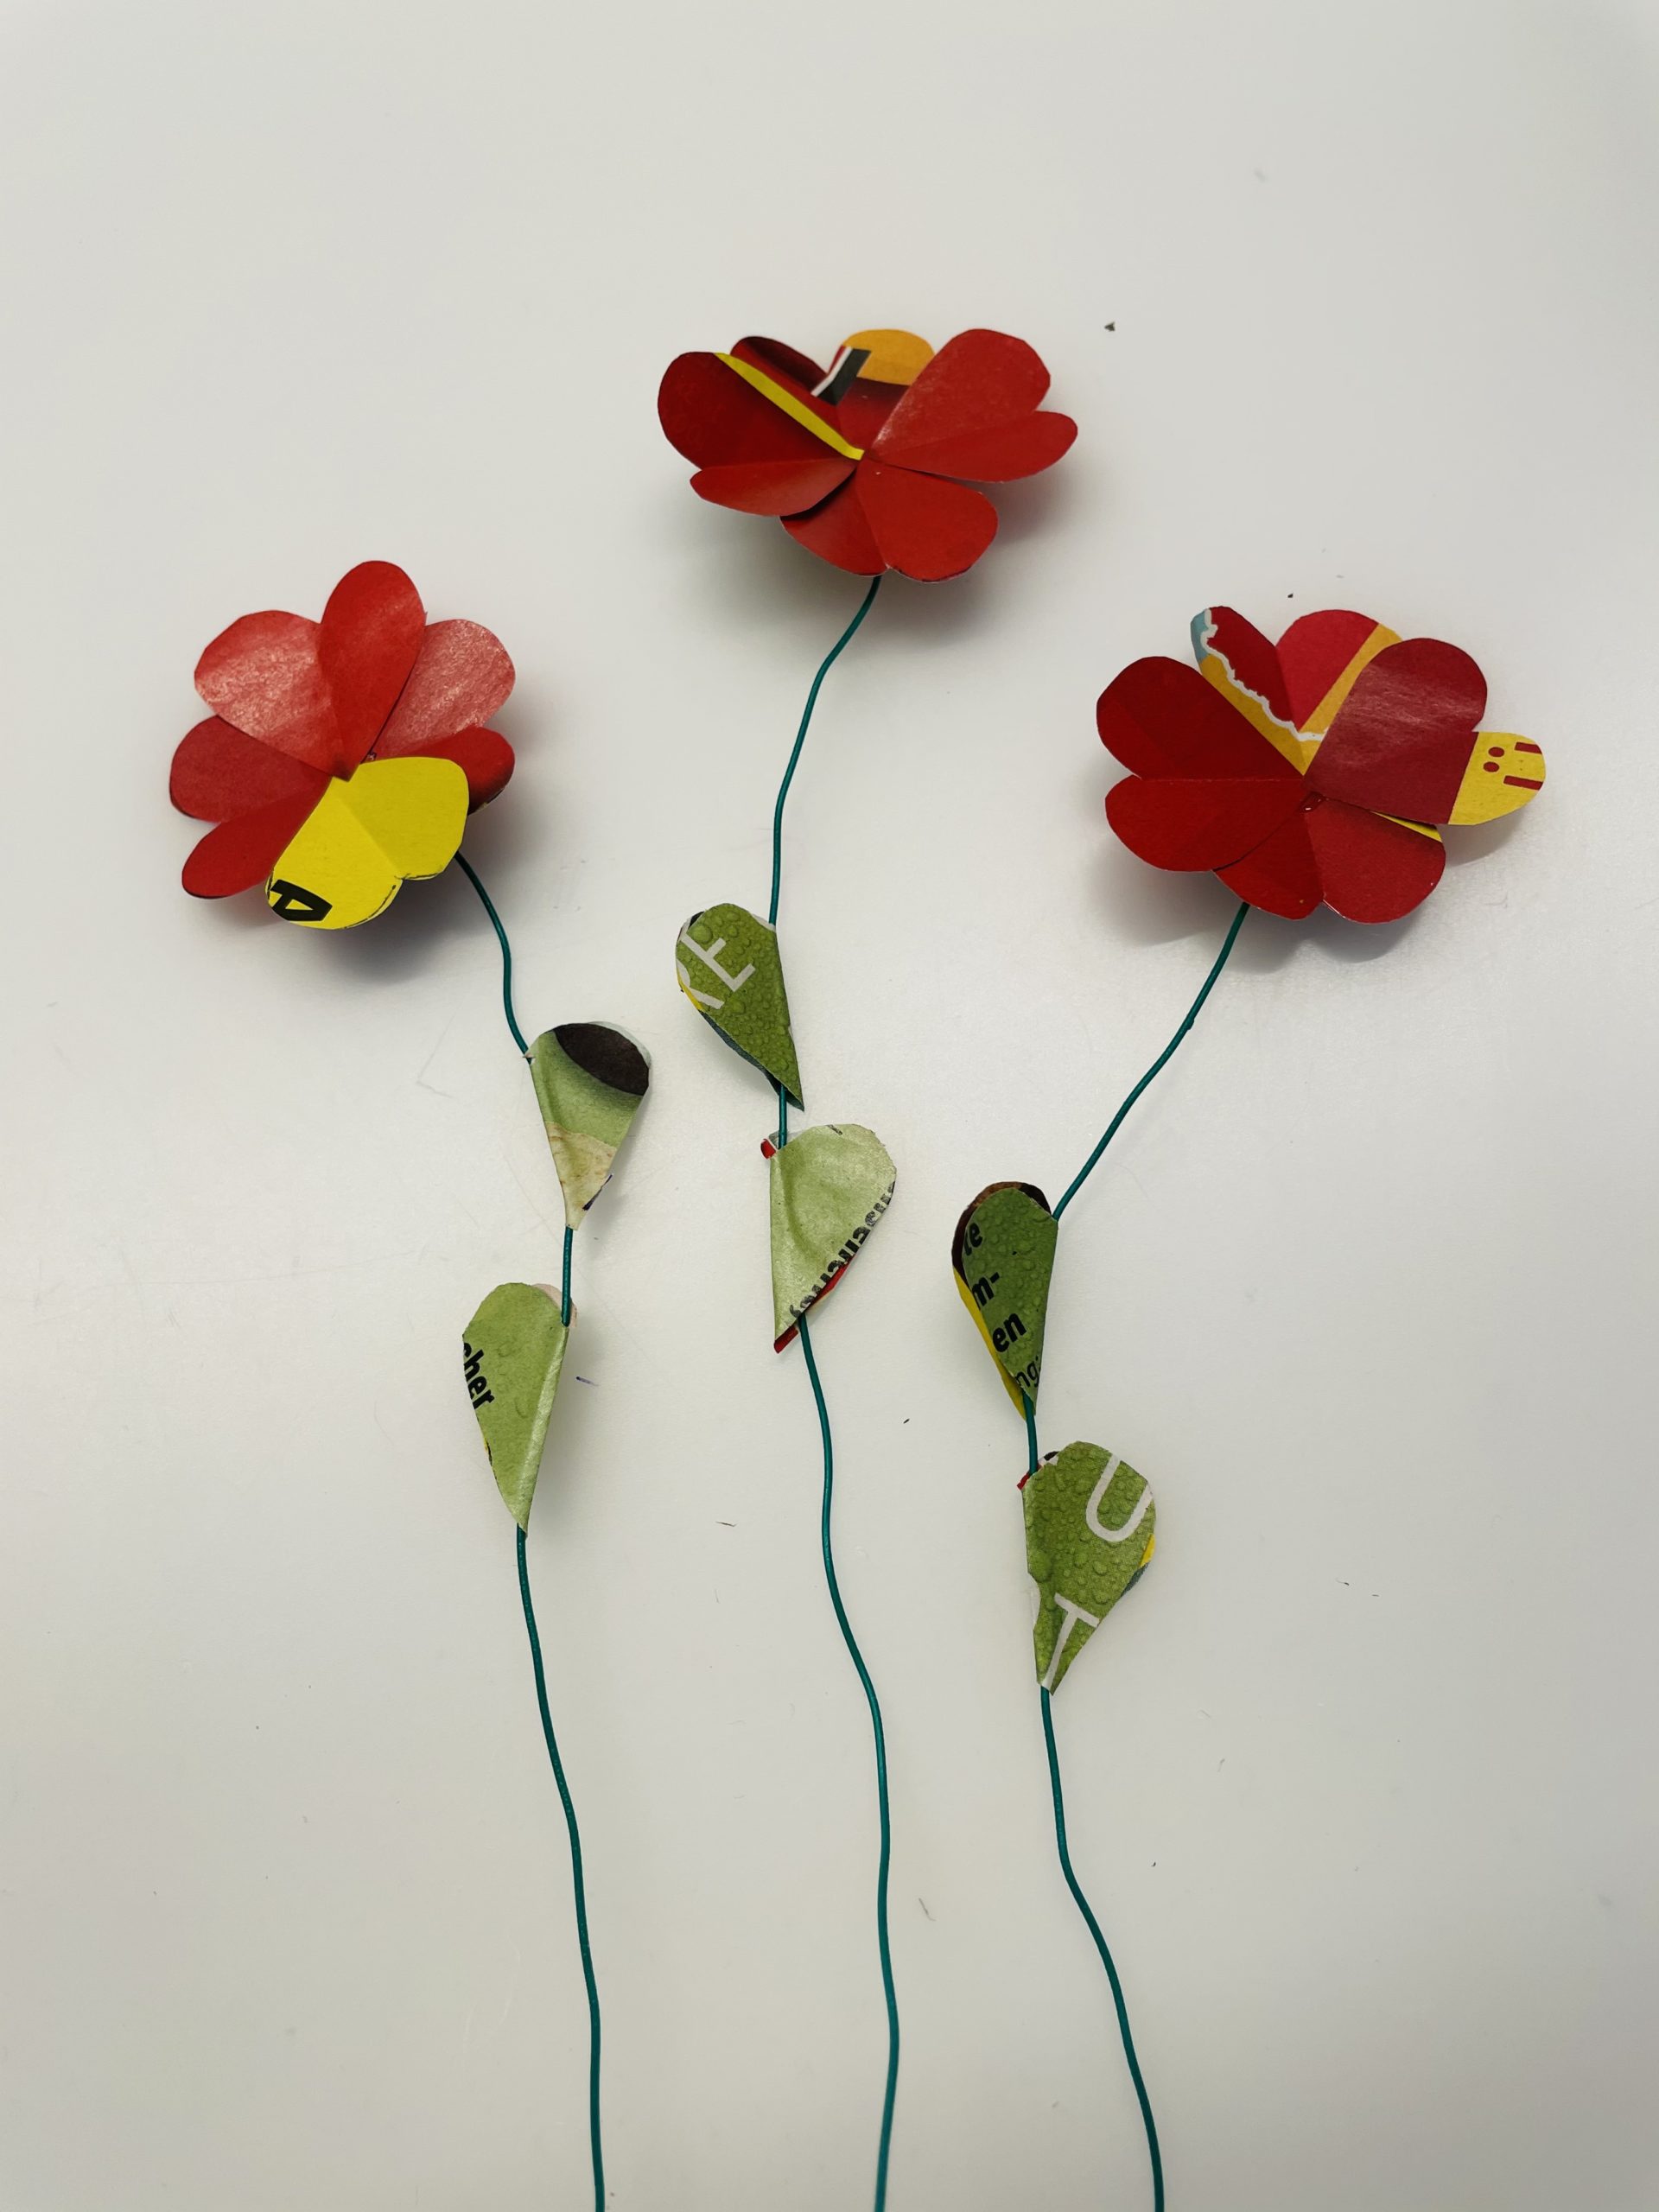 Bild zum Schritt 24 für das Bastel- und DIY-Abenteuer für Kinder: 'So sehen die Blumen mit Blättern aus.'